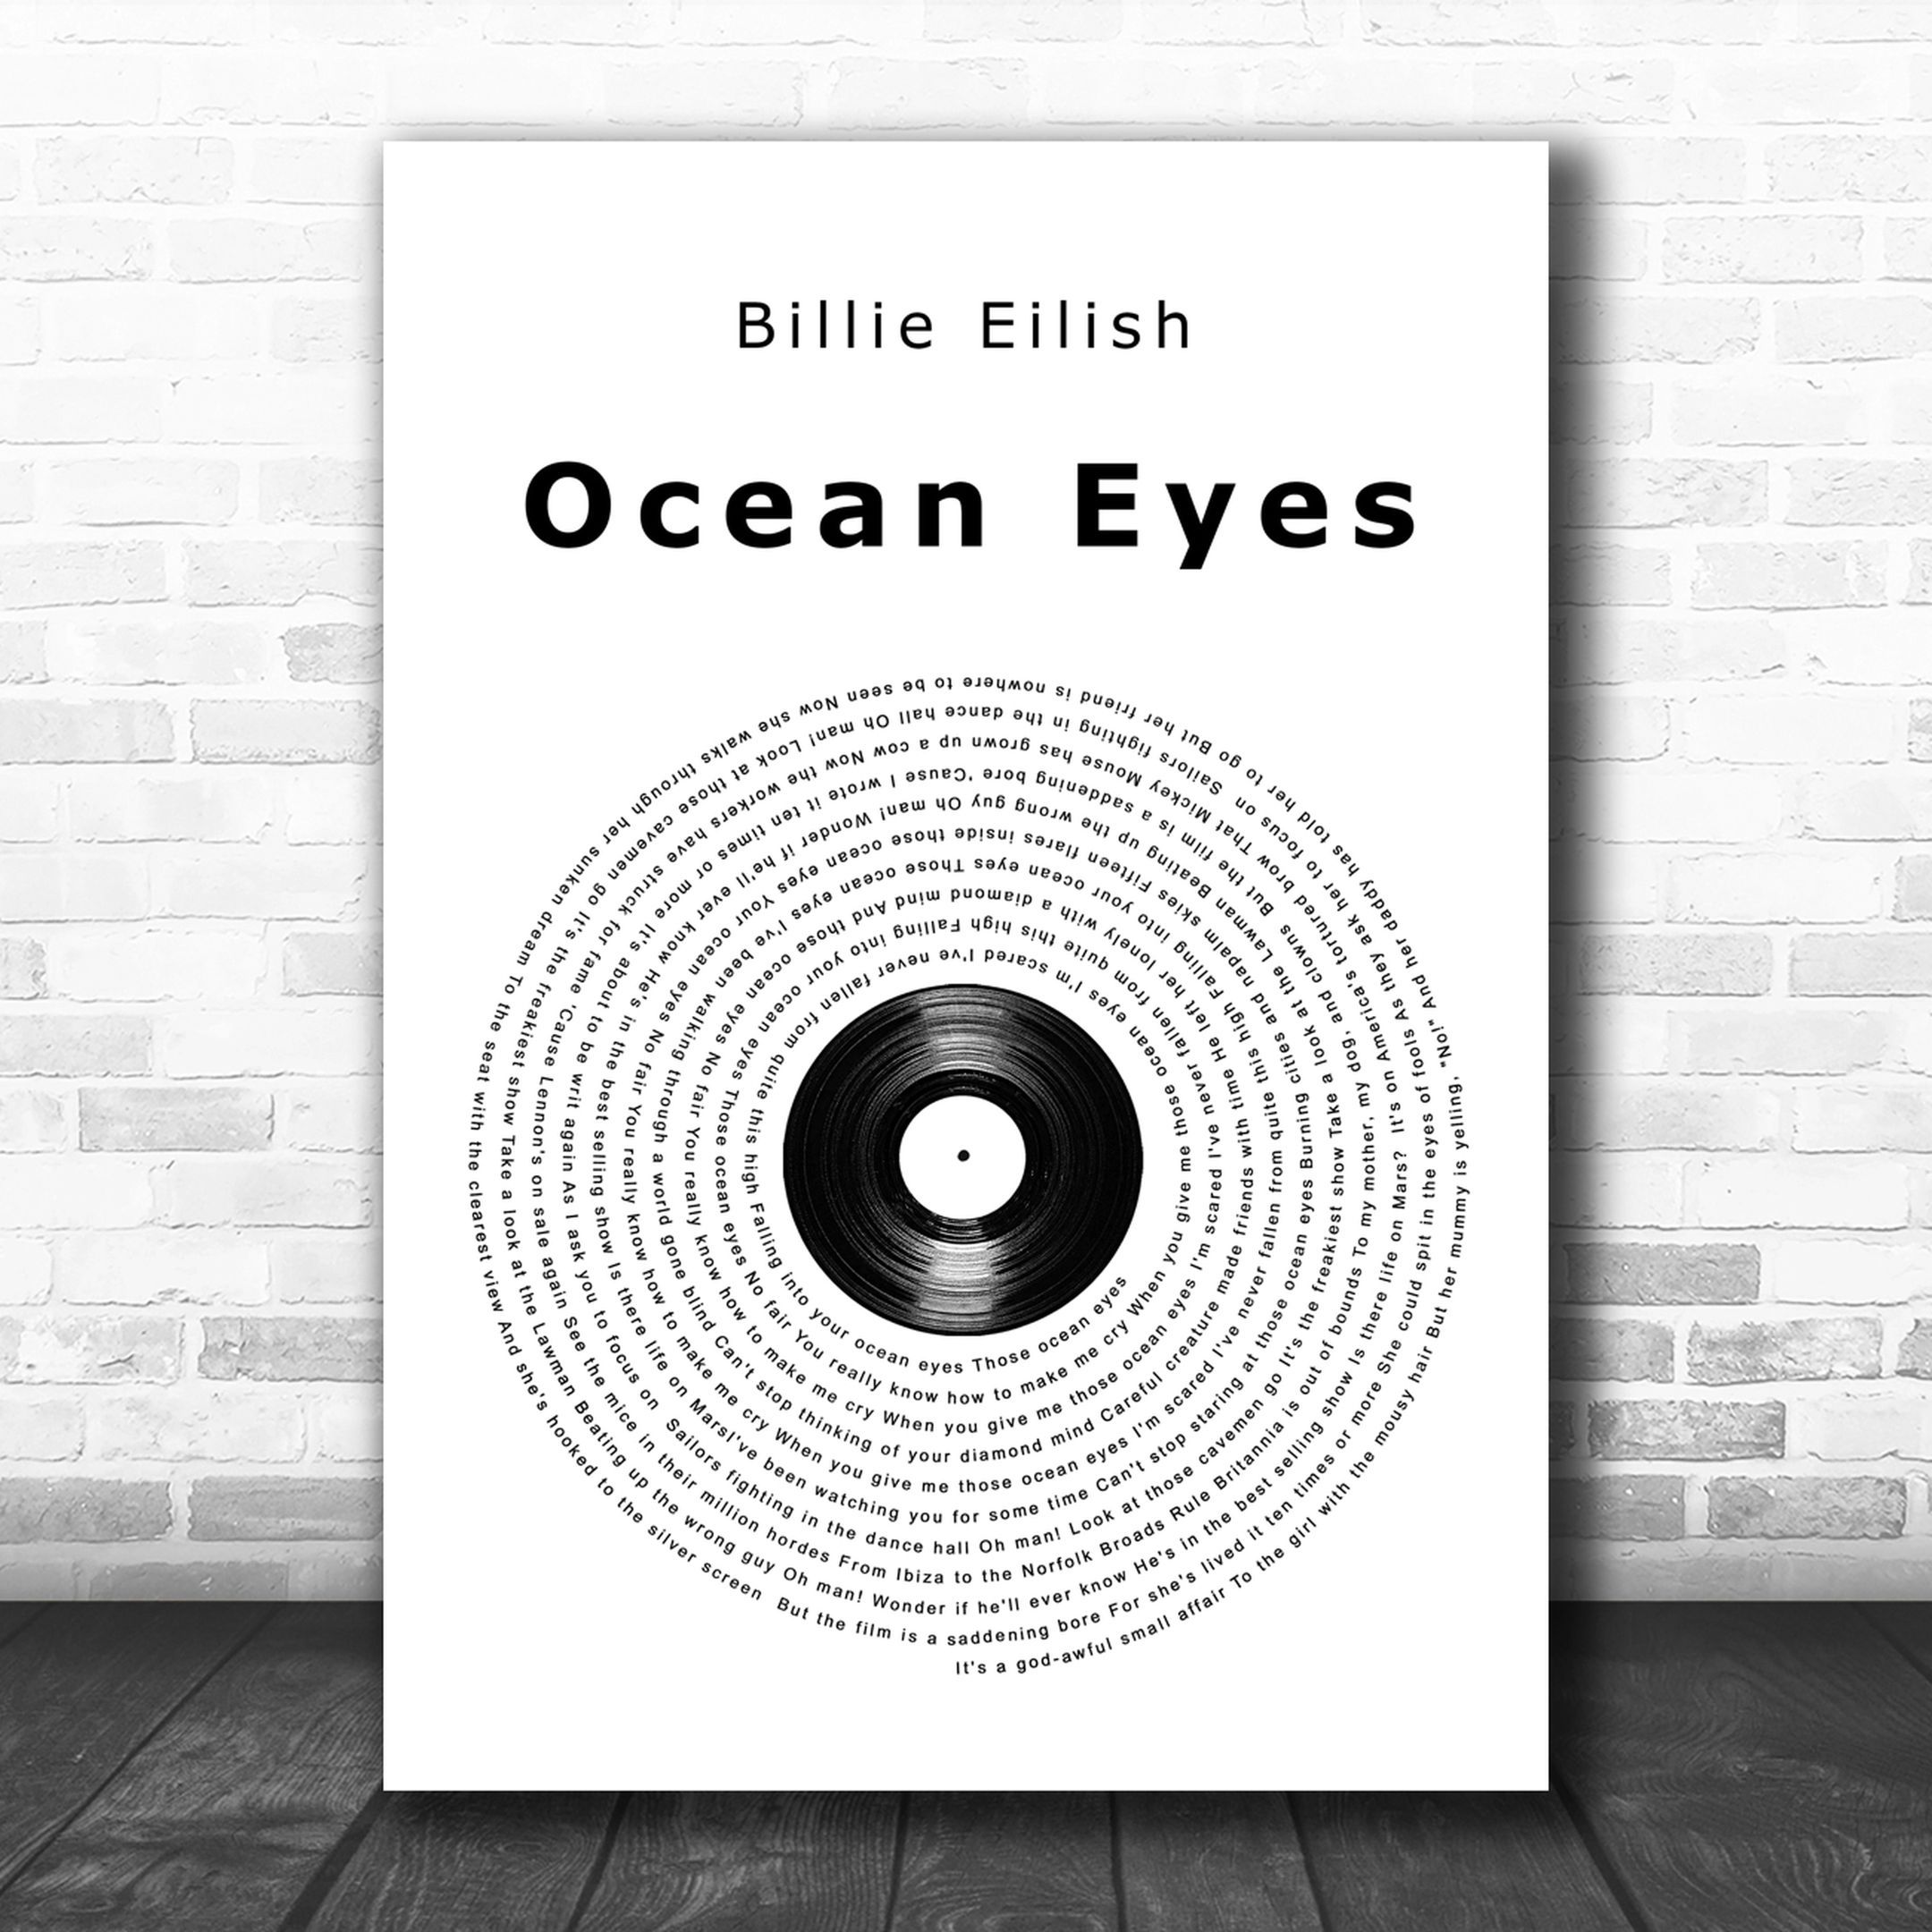 Details about   Billie Eilish Ocean Eyes Song Lyrics LP Record Album Wall Decor Unique Music Art 